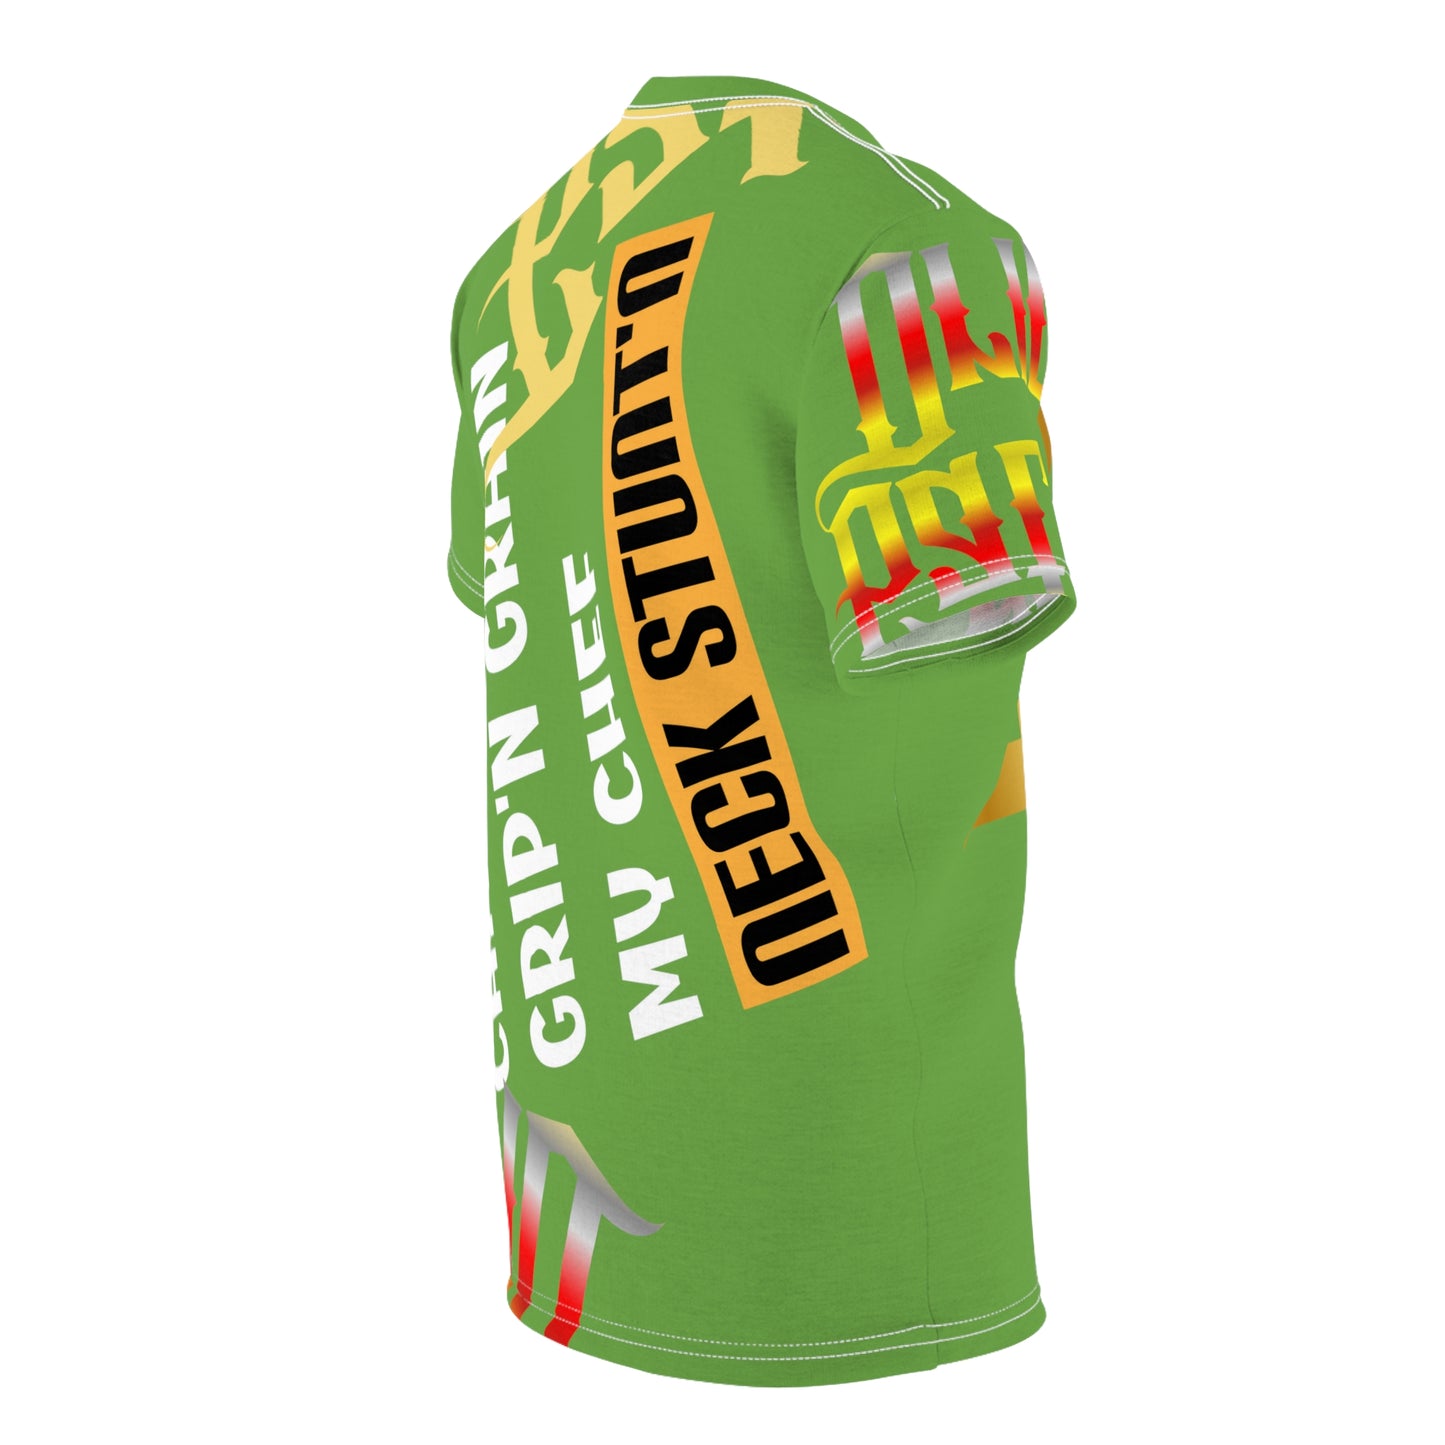 Green Gator Drip Exclusive Supa-Heavy Excess-Stunna Flex Alligator Playuz Limited Edition OG Multi-Logo Rich Daddy “Chauffeur Grip’n Grain My Chef Neck Stunt’n” Unisex Cut & Sew Playuz Tee